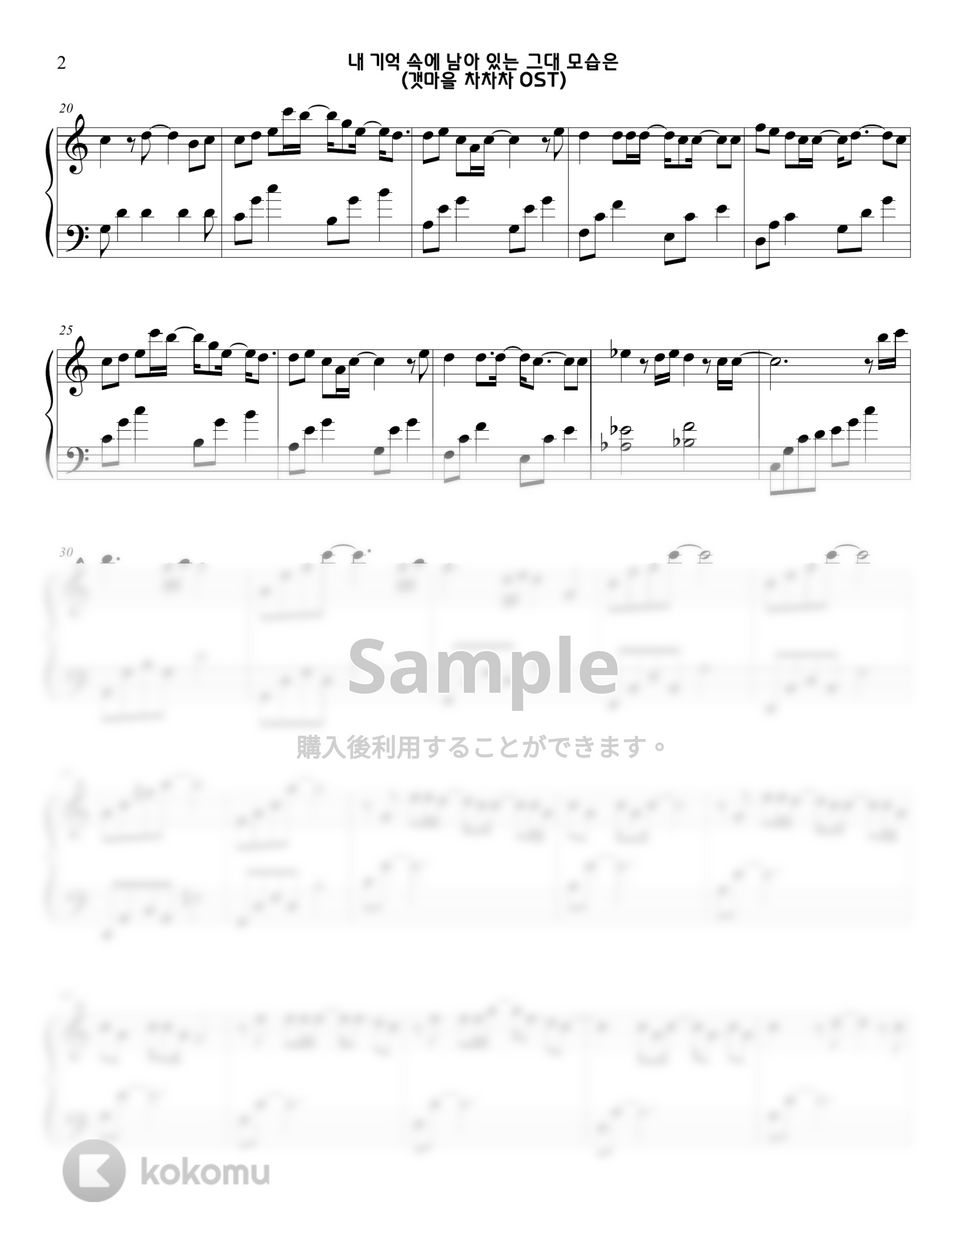 海街チャチャチャ OST - 'Remains in My Memory(내 기억 속에 남아 있는 그대 모습은)' (part. 6) by Sunny Fingers Piano